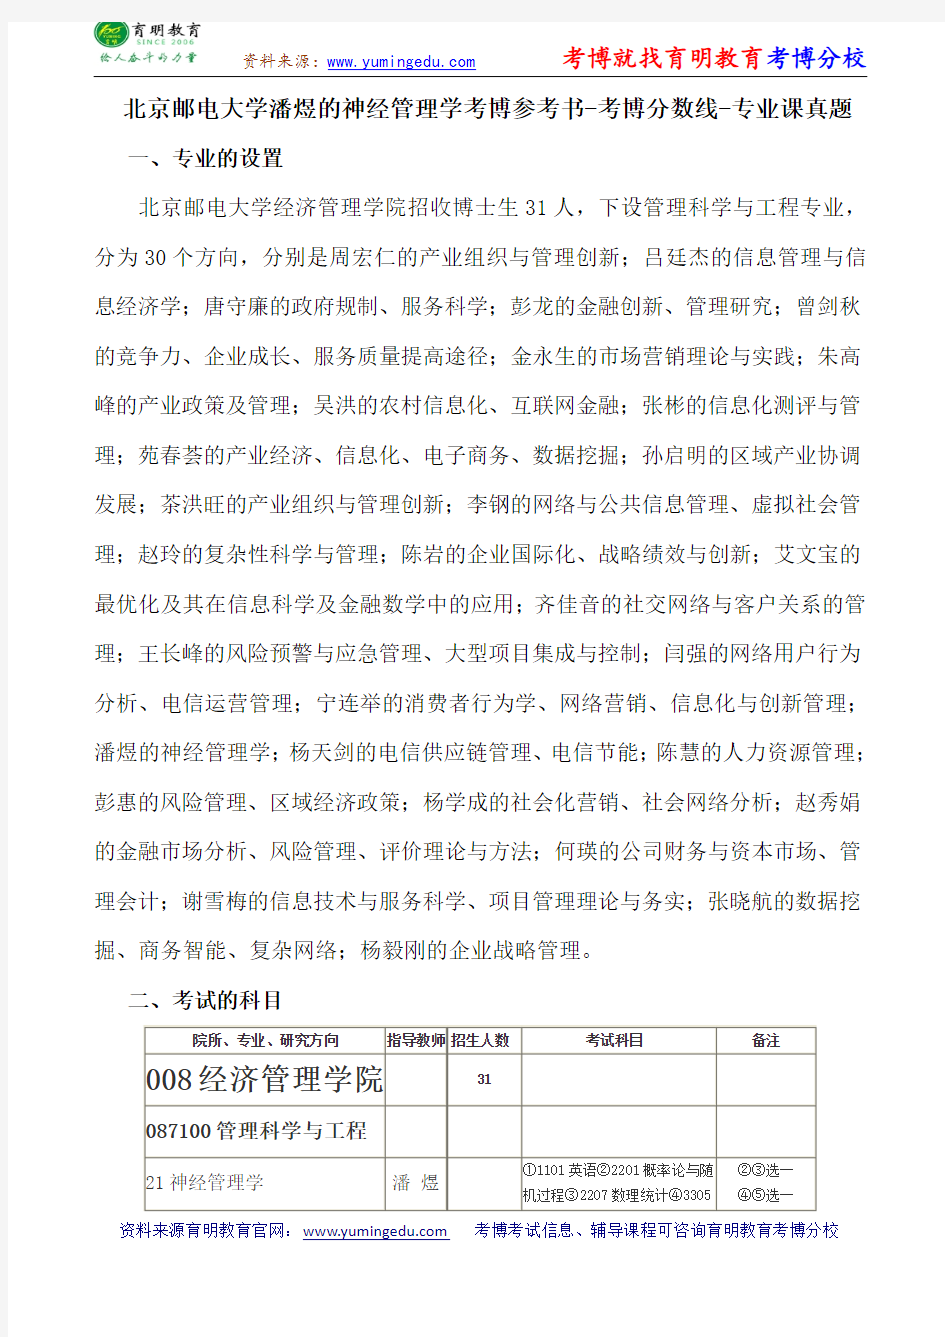 北京邮电大学潘煜的神经管理学考博导师课件内部资料考试重点